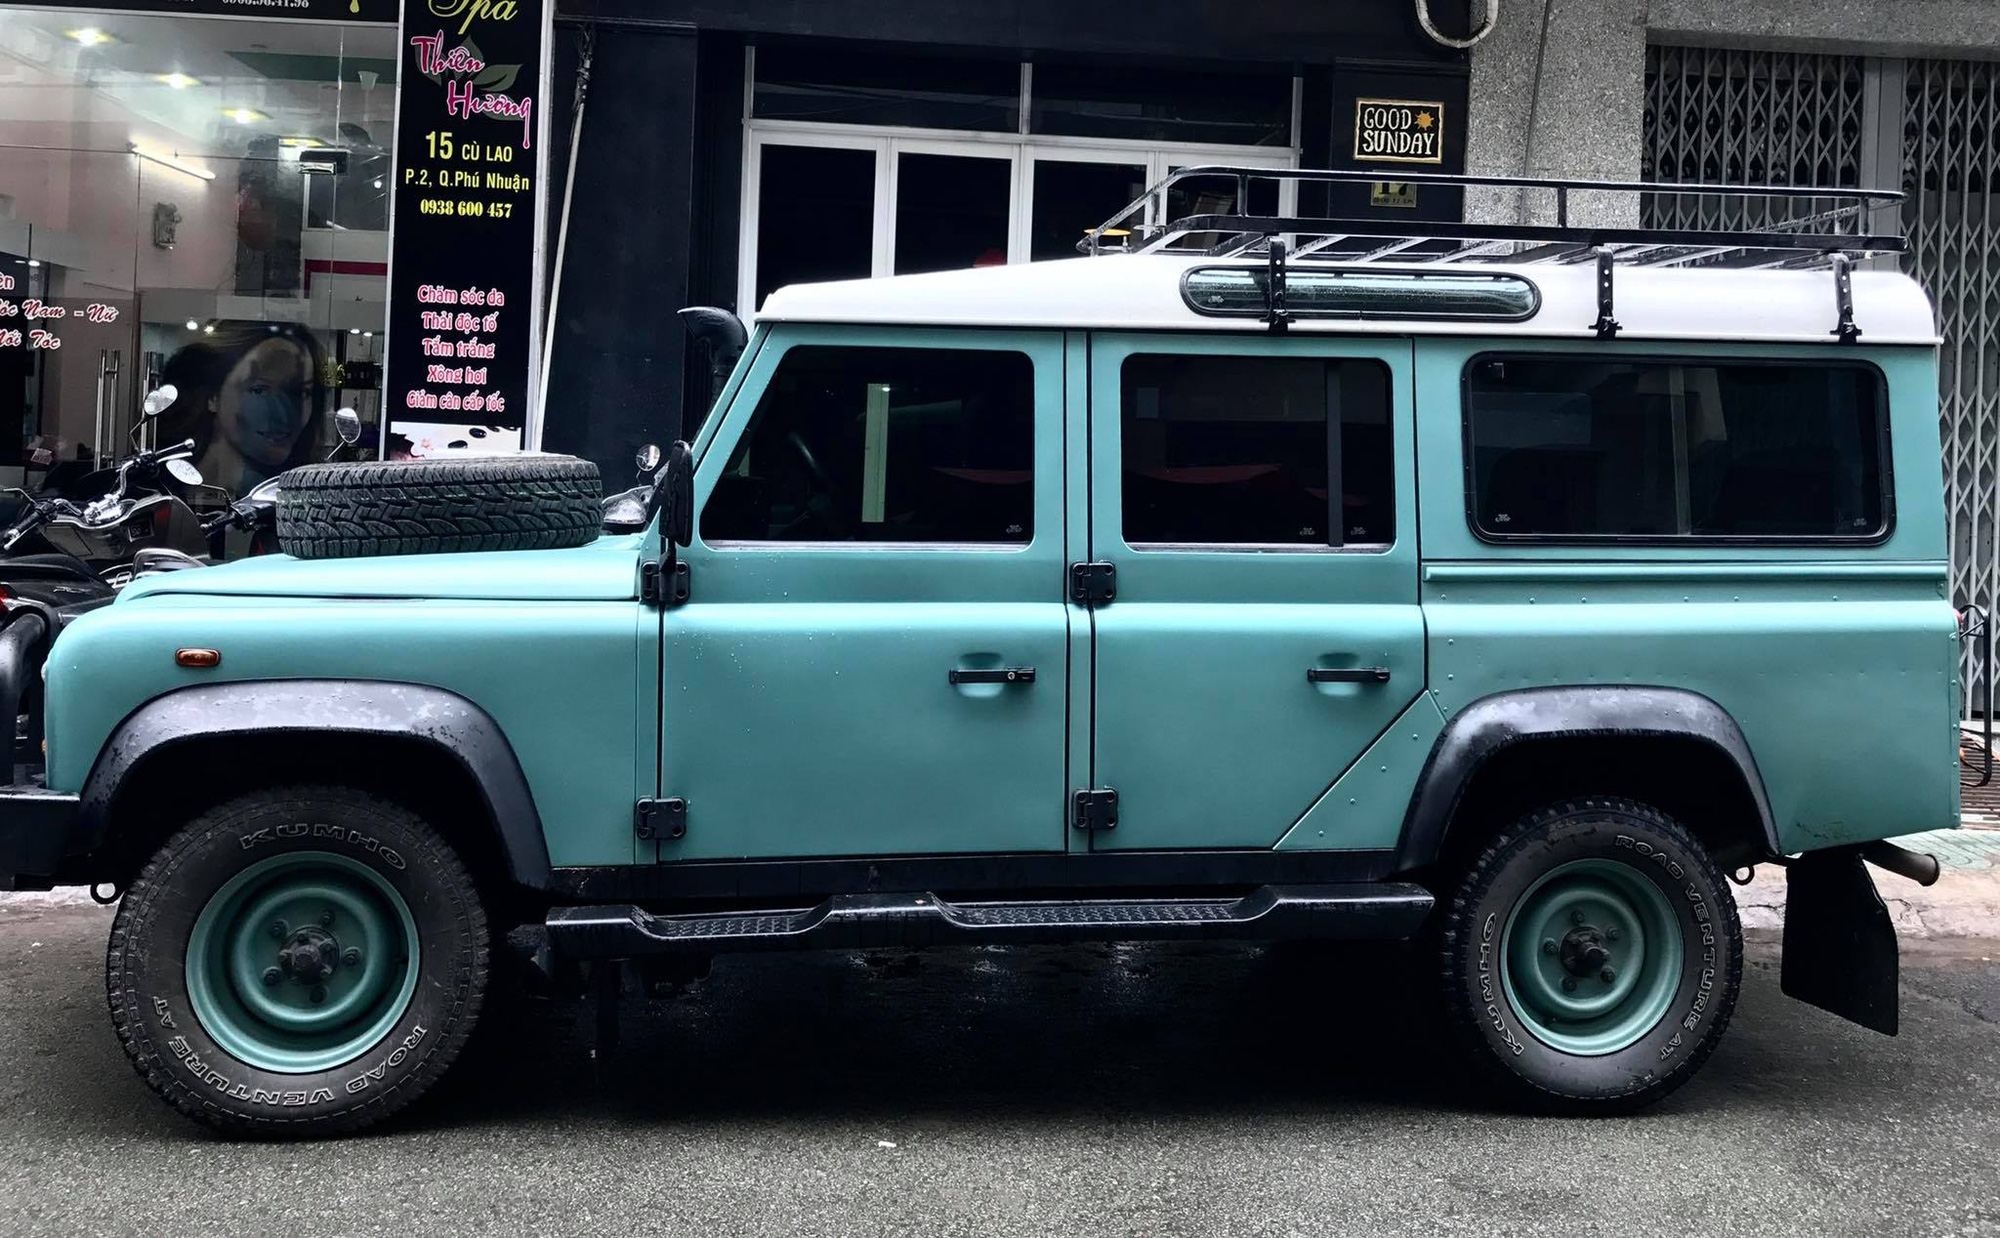 Giữ giá như Land Rover: Xe offroad đi 18 năm vẫn bán lại với giá 2,1 tỷ đồng - Ảnh 6.